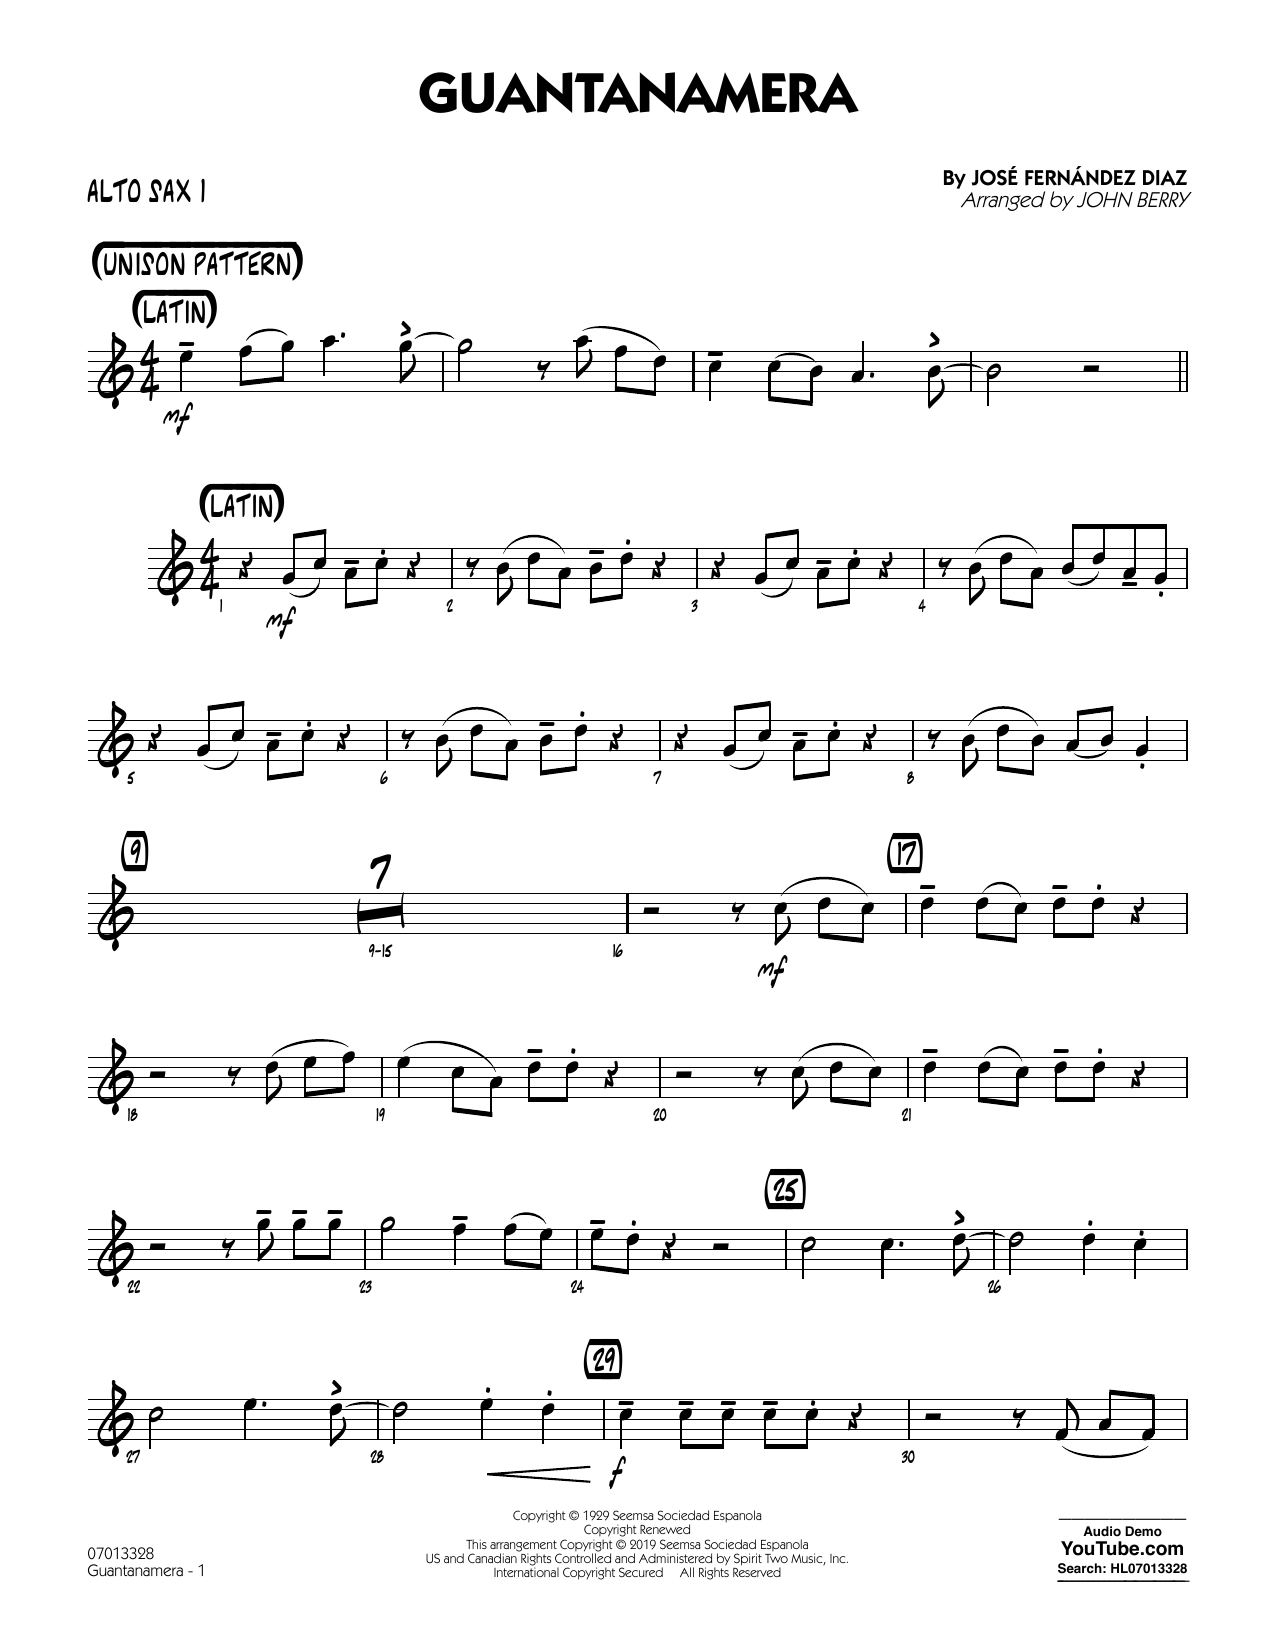 José Fernández Diaz Guantanamera (arr. John Berry) - Alto Sax 1 Sheet Music Notes & Chords for Jazz Ensemble - Download or Print PDF